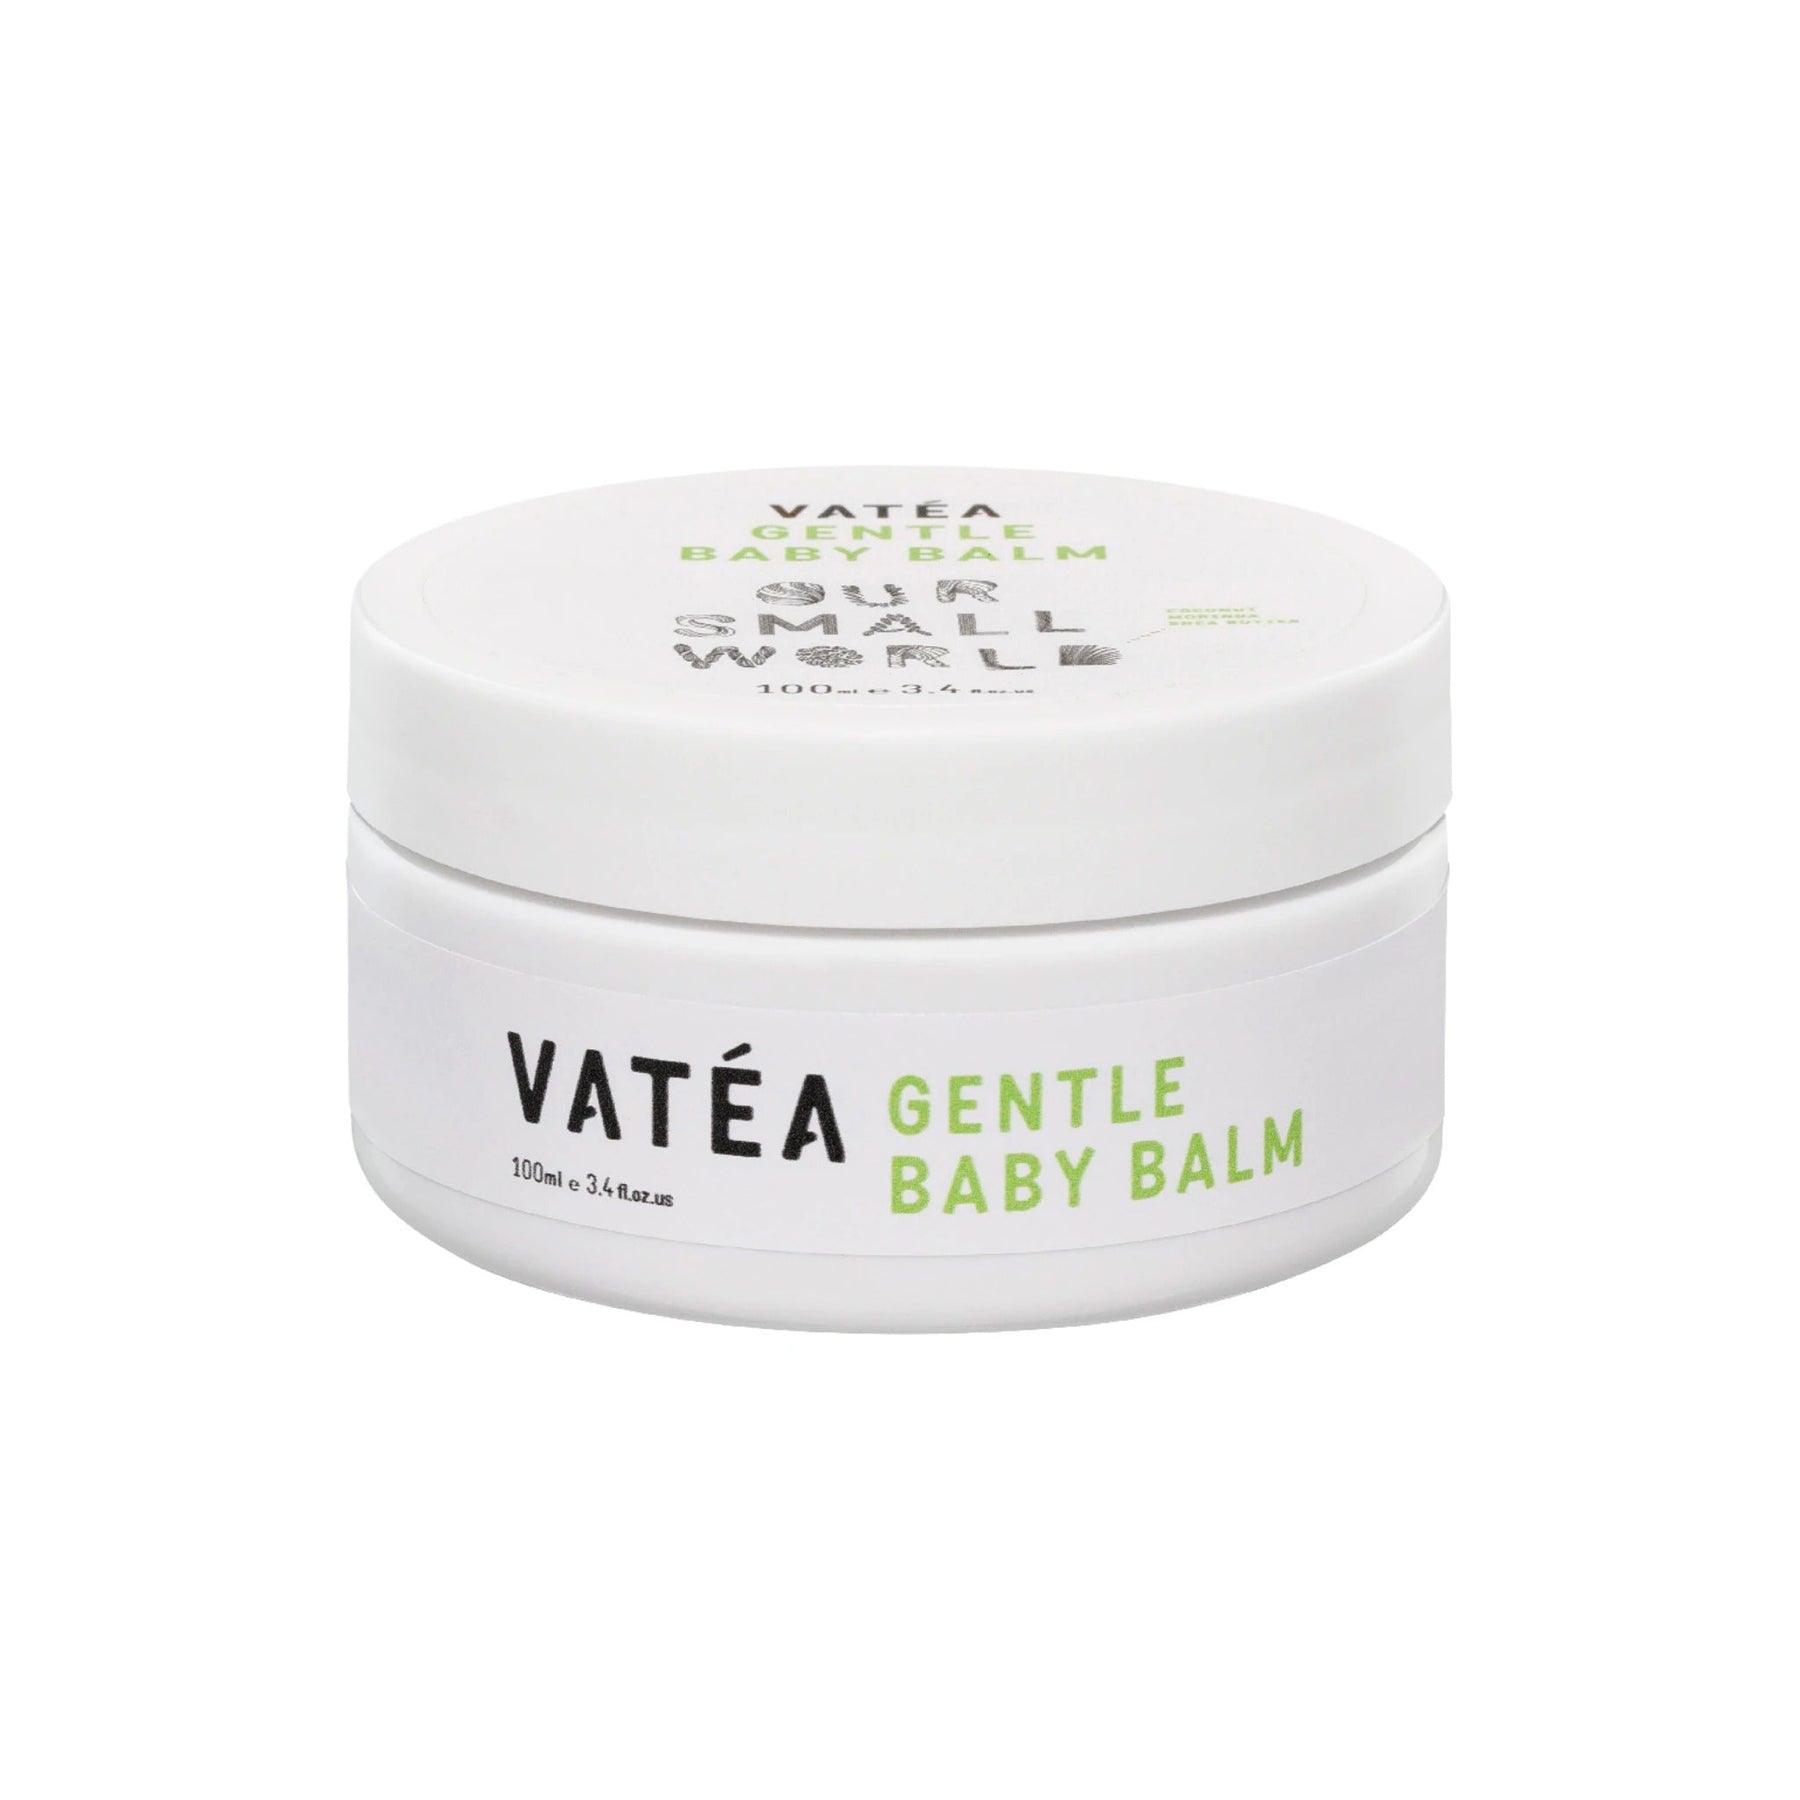 VATÉA’S Gentle Baby Balm, to support dry skin 100g